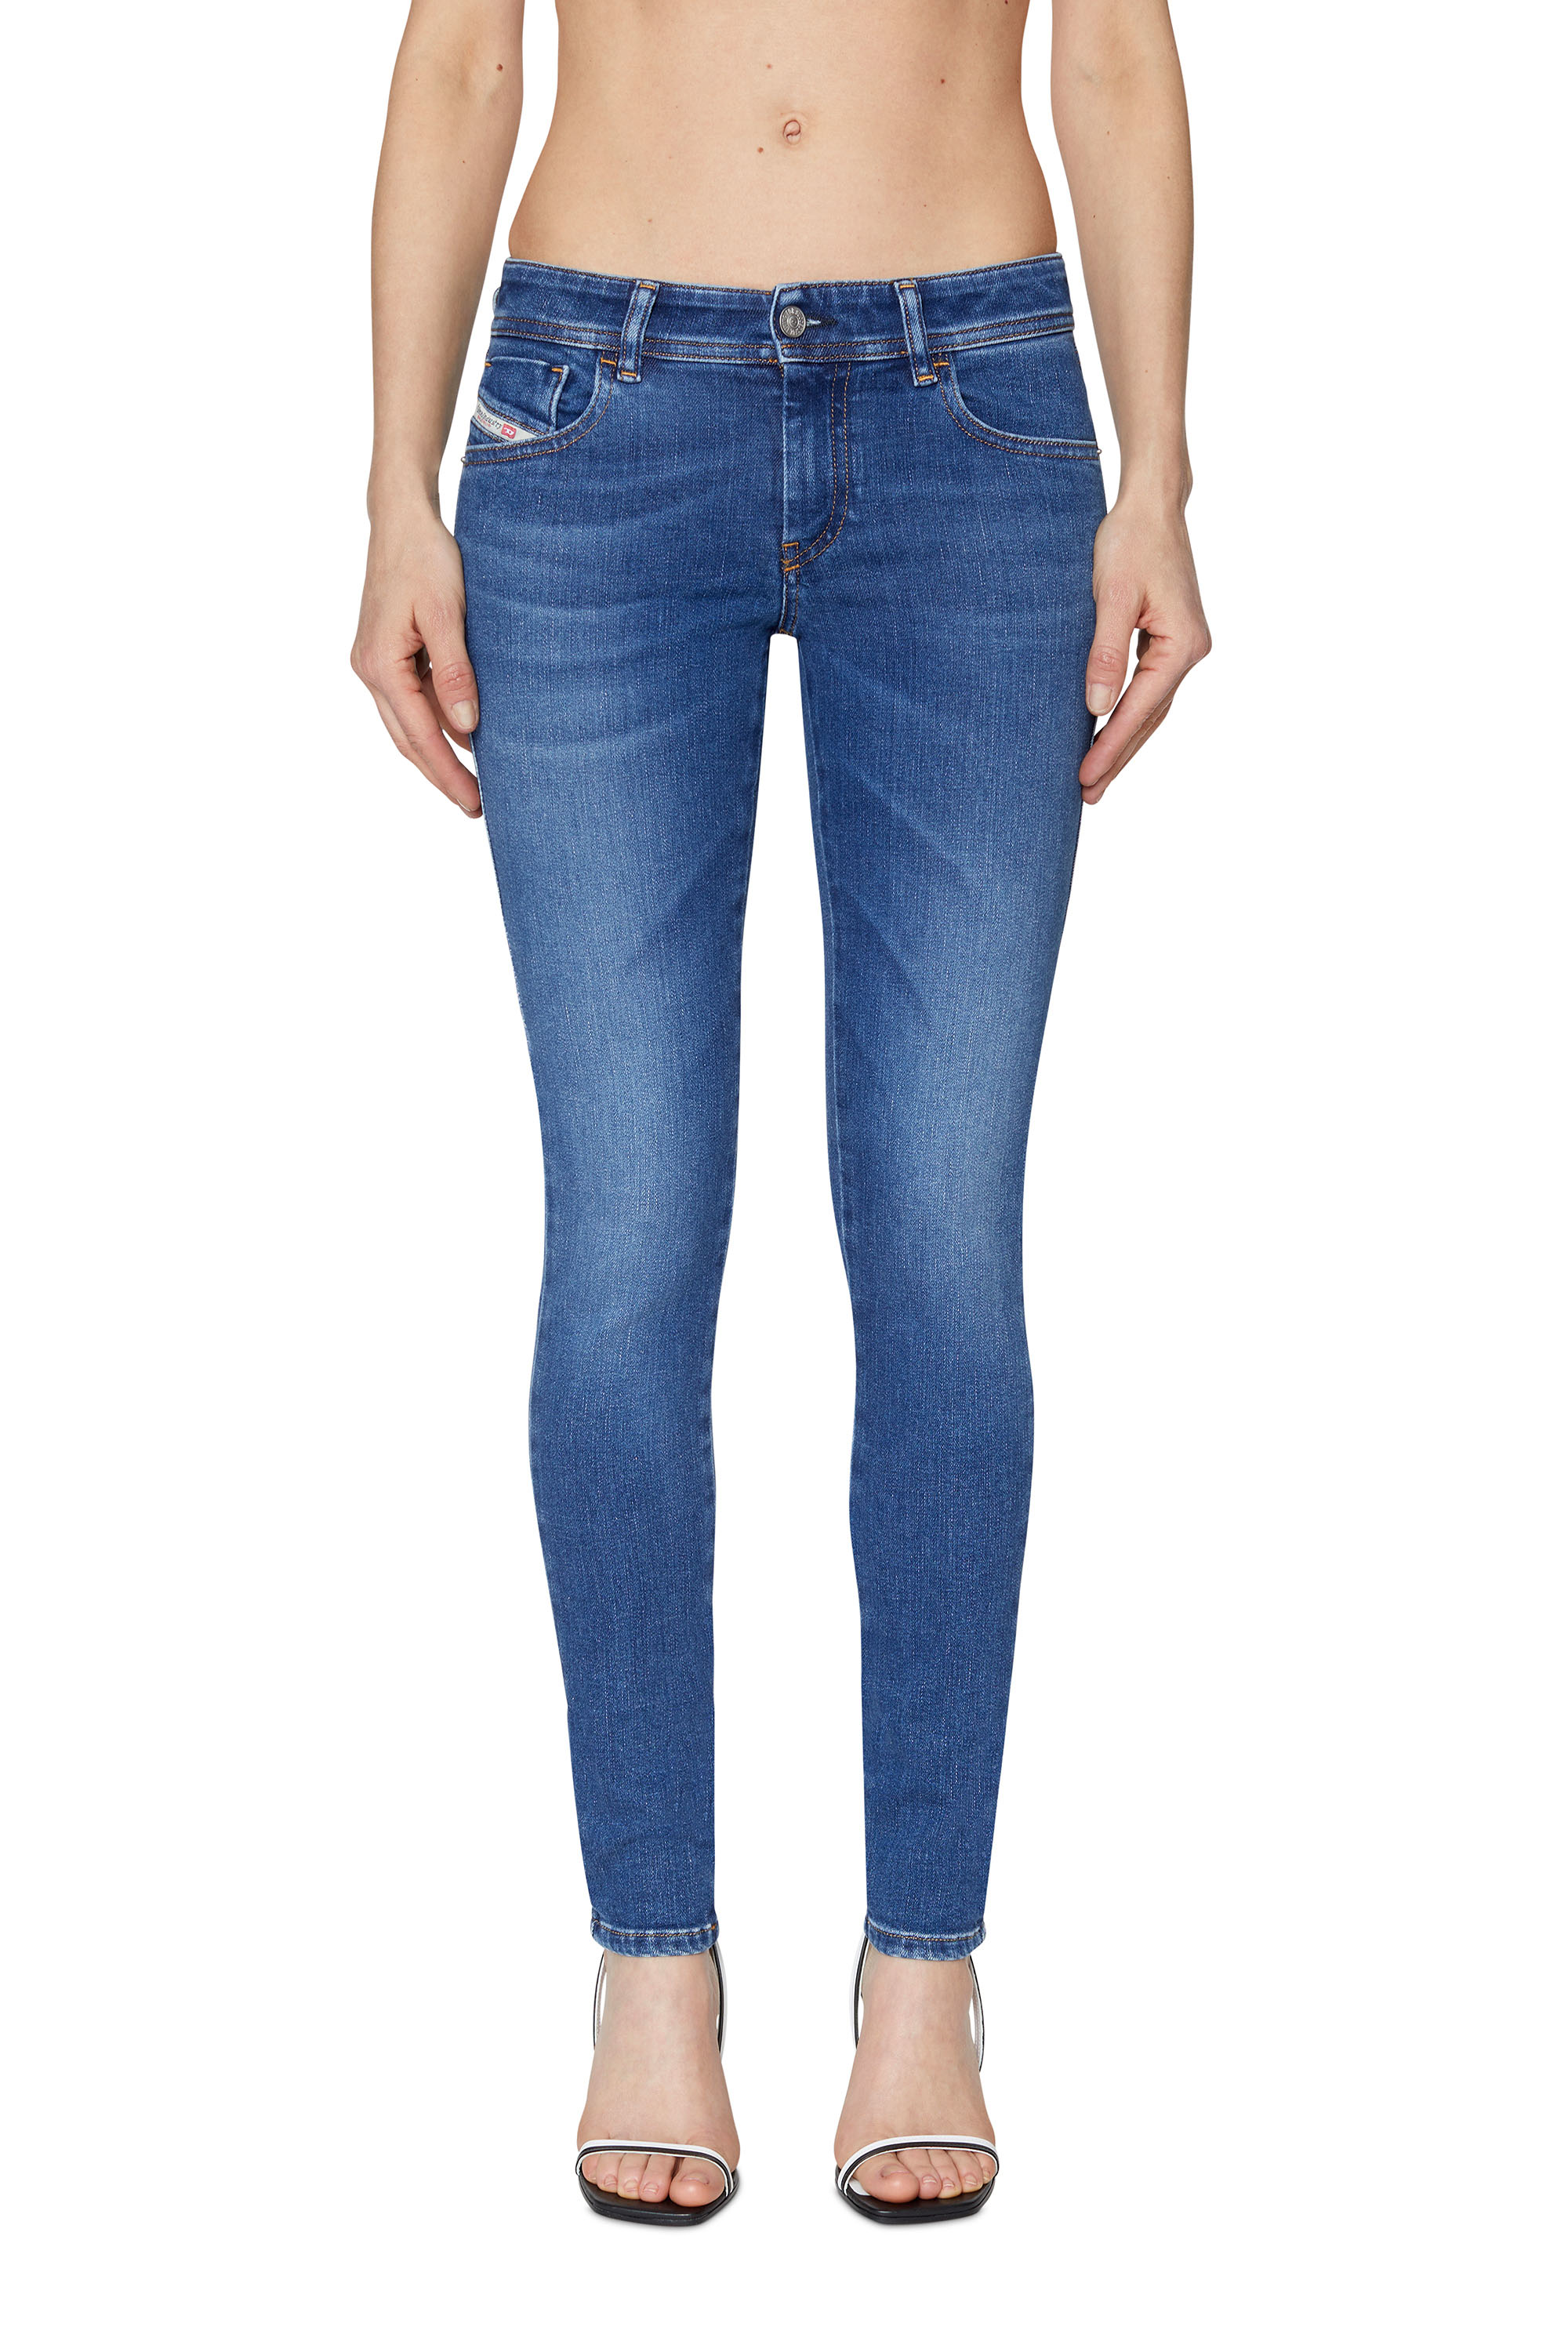 Super skinny Jeans 2018 Slandy-Low 09C21, Azul medio - Vaqueros